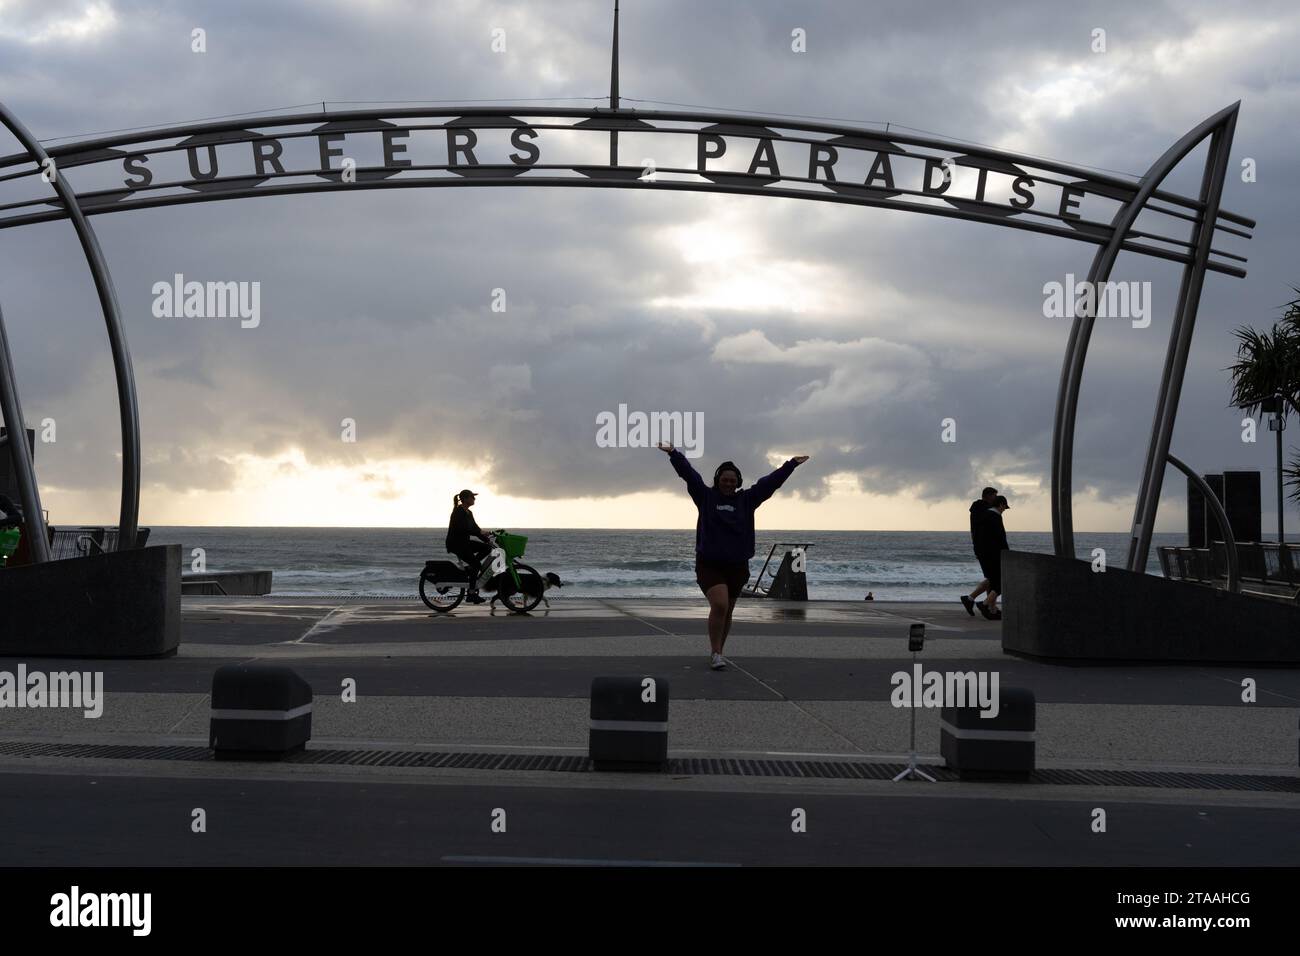 Surfers Paradise Australia; 24. September 2023; Surfers Paradise ikonisches skulpturales Schild am Ufer des Surfers Paradise stellt junge weibliche Touristen für Selfie als Frau dar Stockfoto